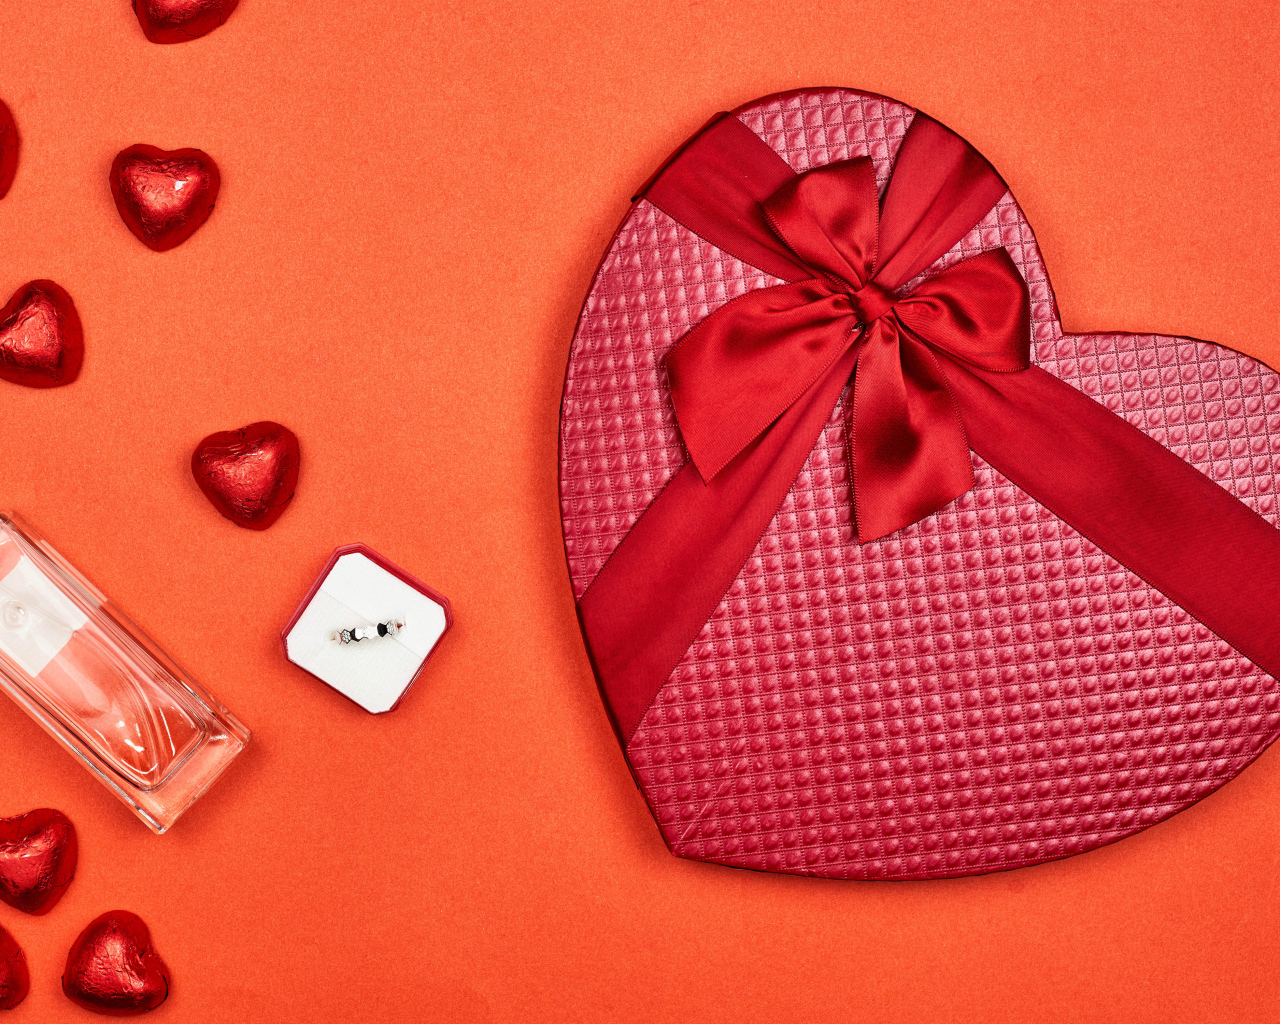 Подарок, духи и конфеты в форме сердца для любимой на 14 февраля